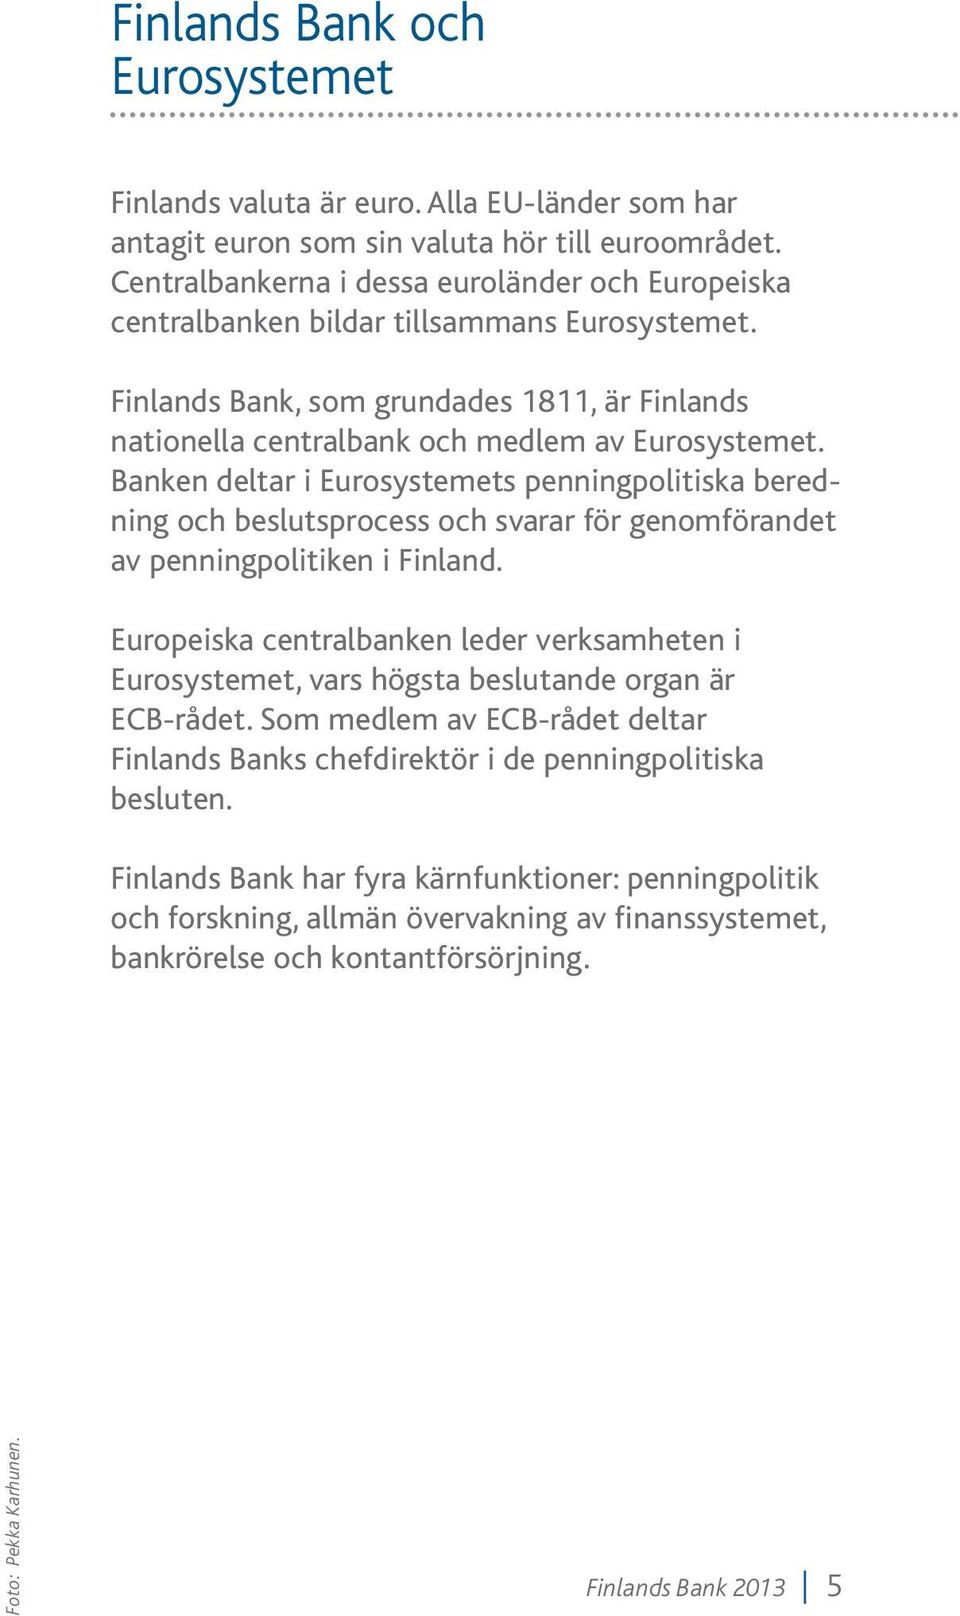 Banken deltar i Eurosystemets penningpolitiska beredning och beslutsprocess och svarar för genomförandet av penningpolitiken i Finland.